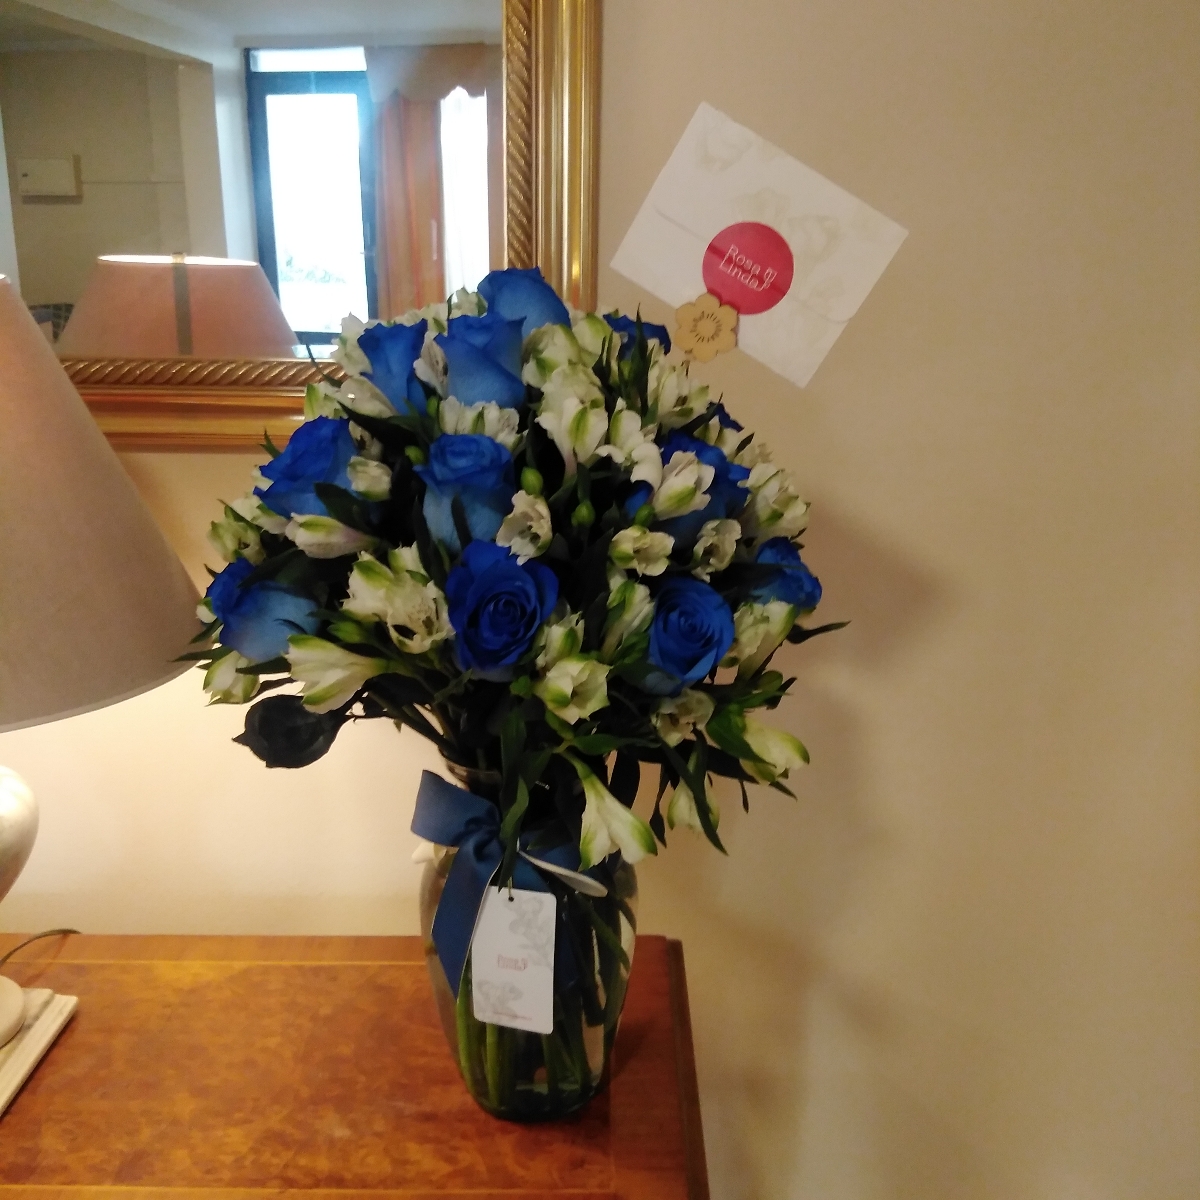 Arreglo floral en florero ánfora con rosas azules y astromelias - Pedido 254429